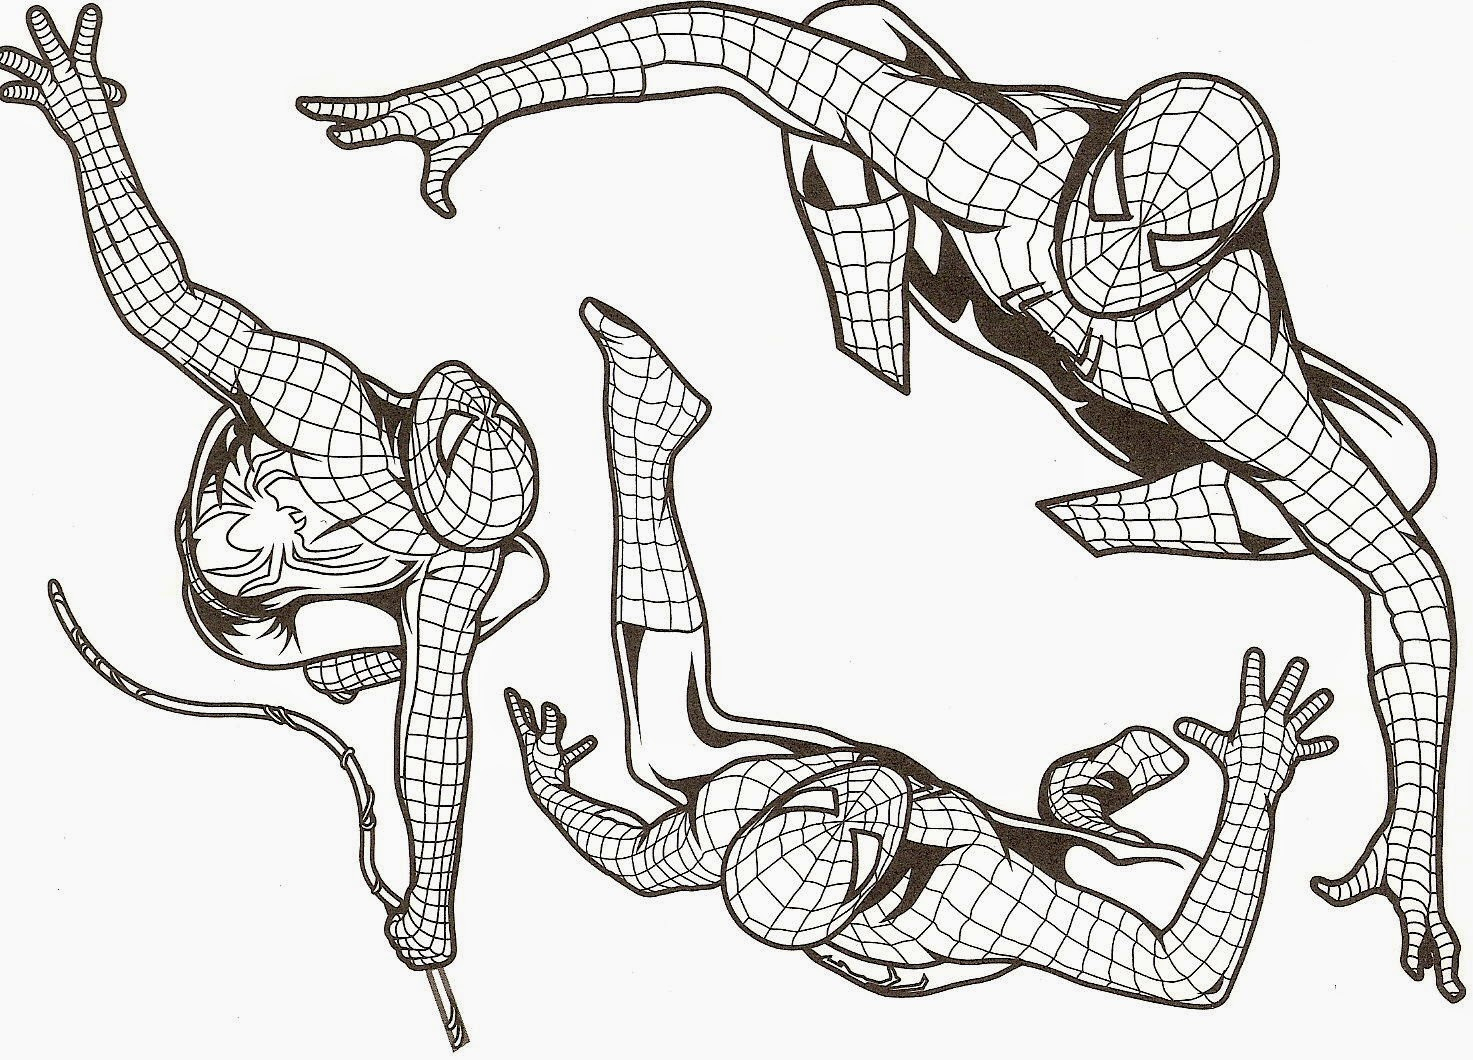 Modele De Dessin A Colorier Gratuit destiné Tete Spiderman A Imprimer